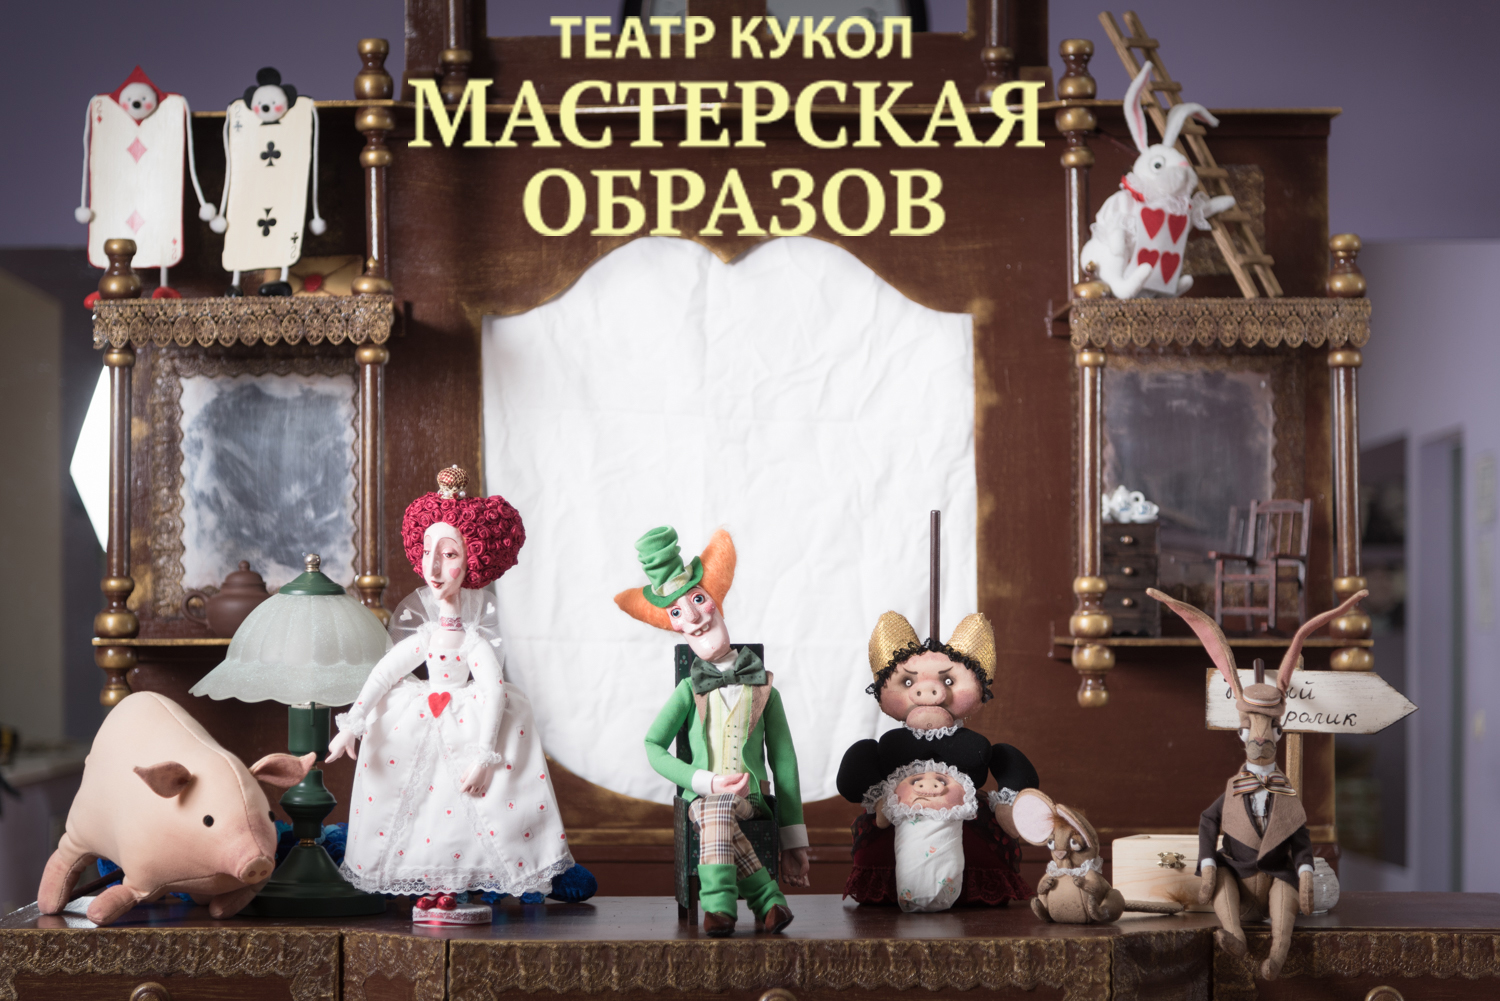 Весенний фестиваль кукольных театров — со 2 по 31 марта в "Аптекарском огороде" - фото 1